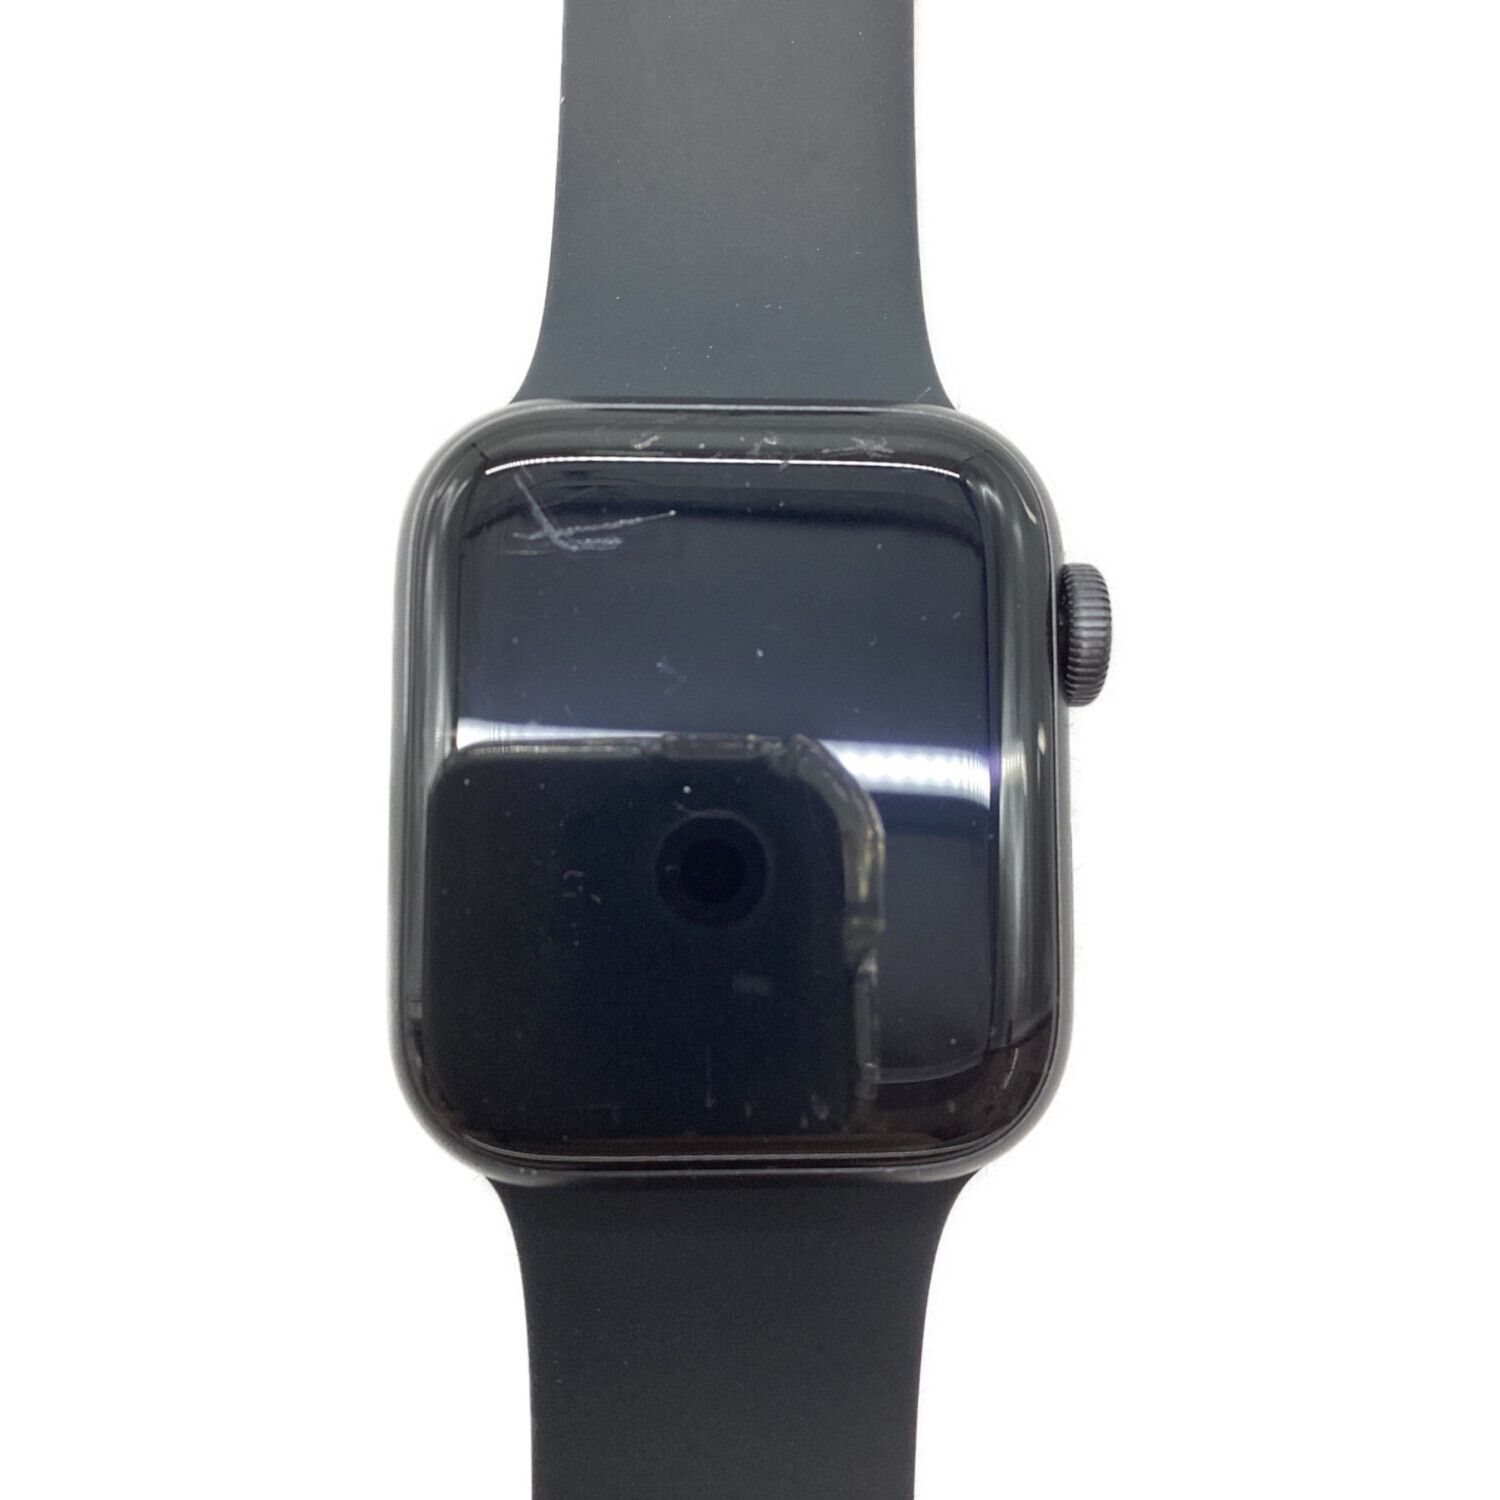 Apple (アップル) Apple Watch SE(第一世代) GPSモデル 40mm MKQ13J/A